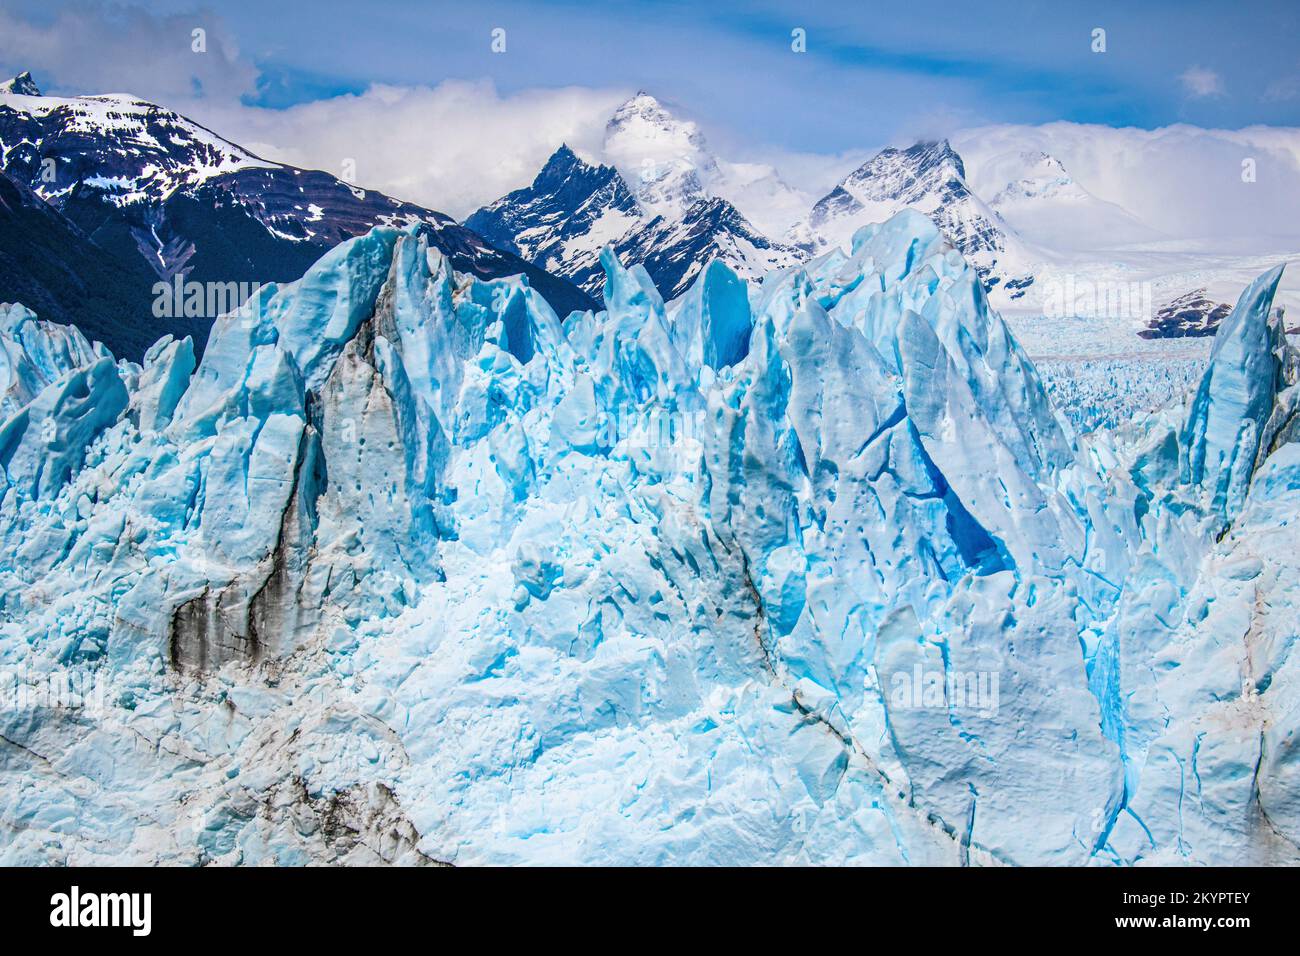 Patagonia argentina: Ghiacciaio Perito Moreno e montagne innevate (Los Andes). Lago Argentino, Parco Nazionale Los Glaciares, Santa Cruz, Argentina. Foto Stock